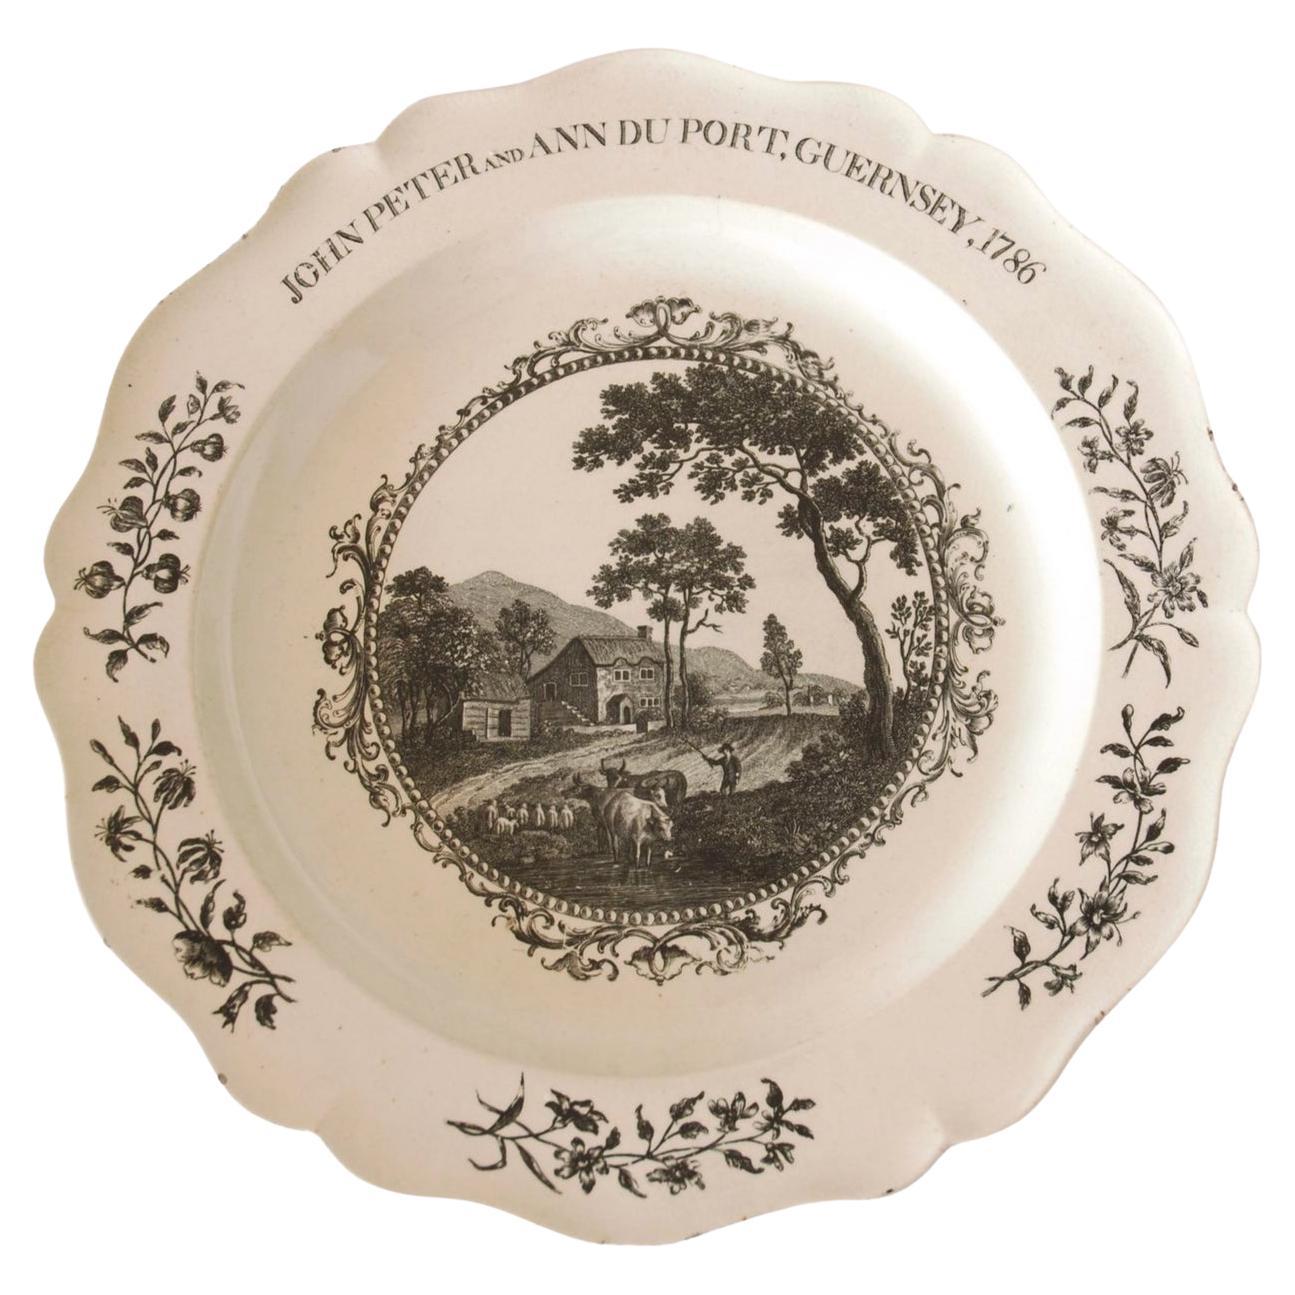 Wedding Plate in cremware, Wedgwood C1786